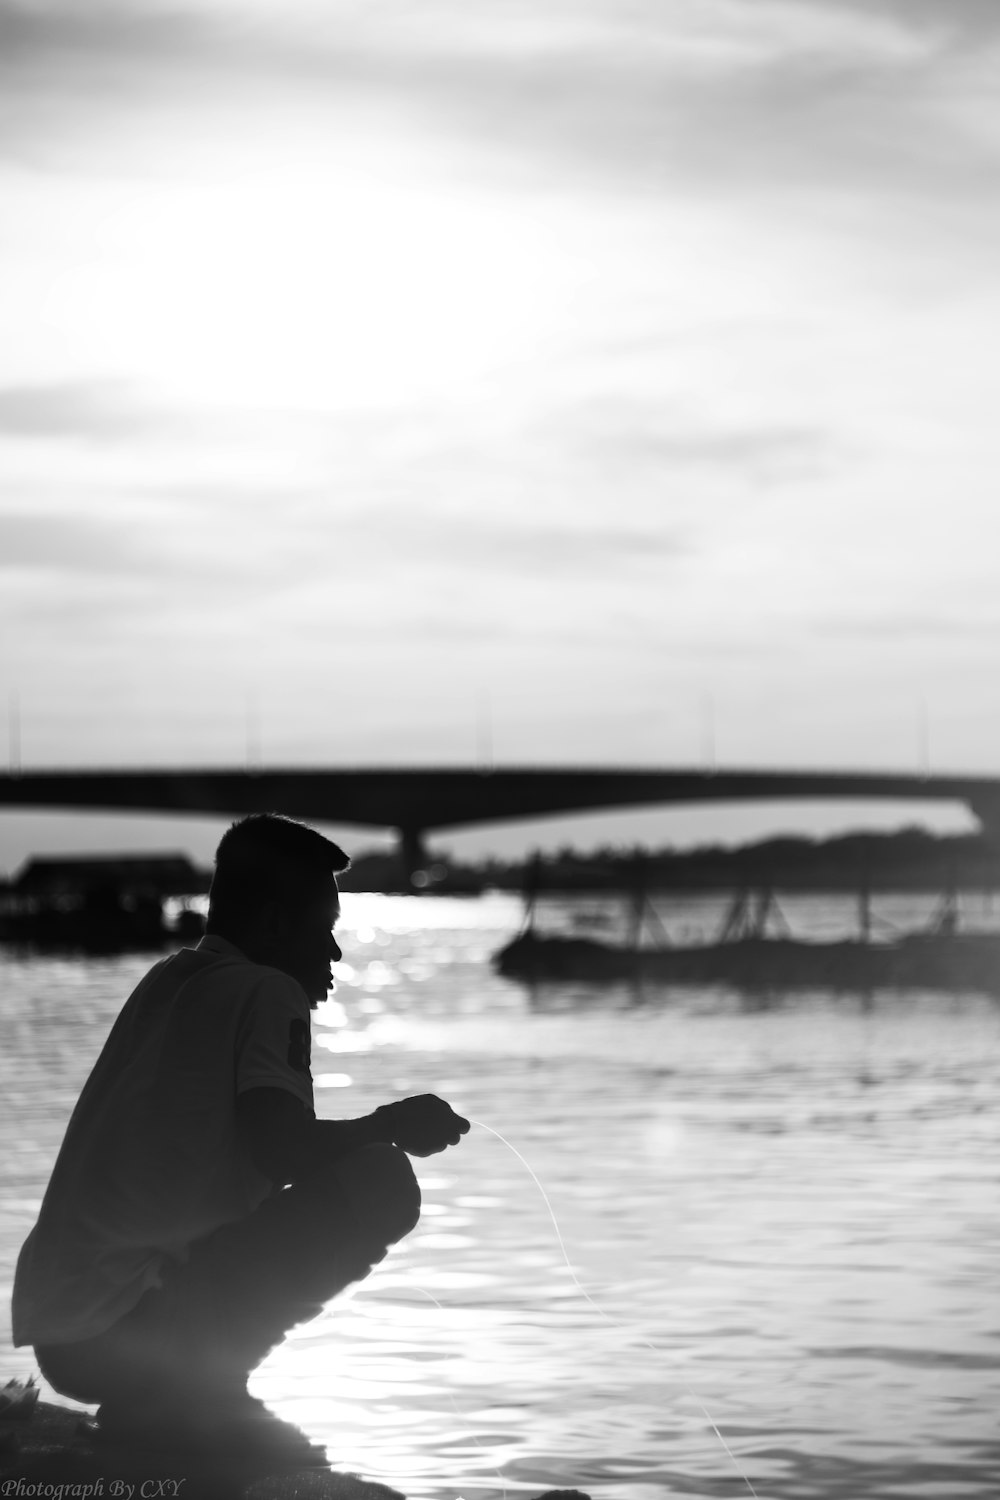 호수에서 낚시하는 남자의 그레이스케일 사진